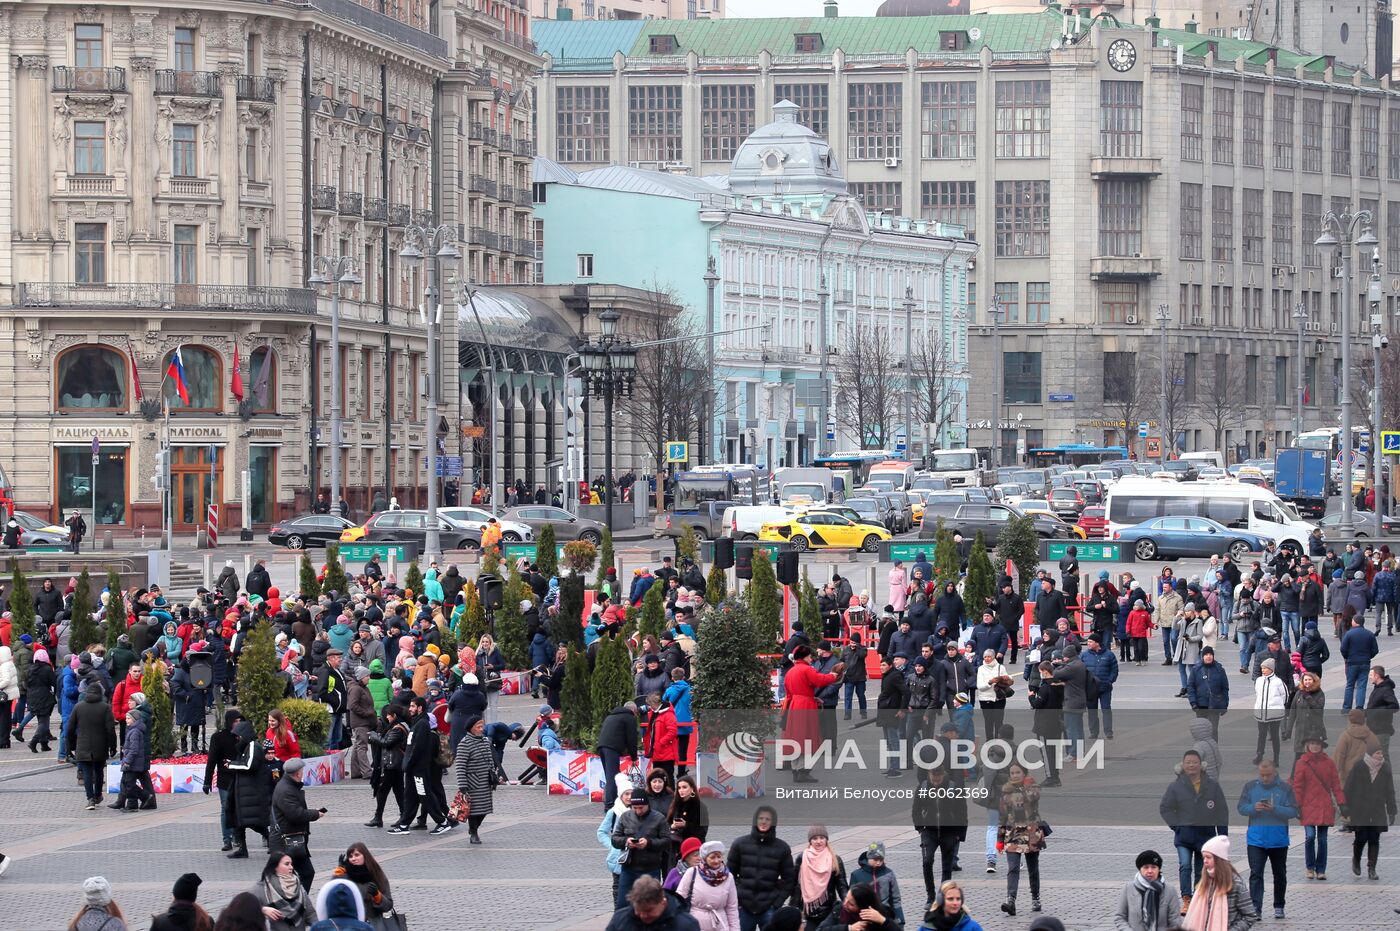 Фестиваль "День народного единства" в Москве